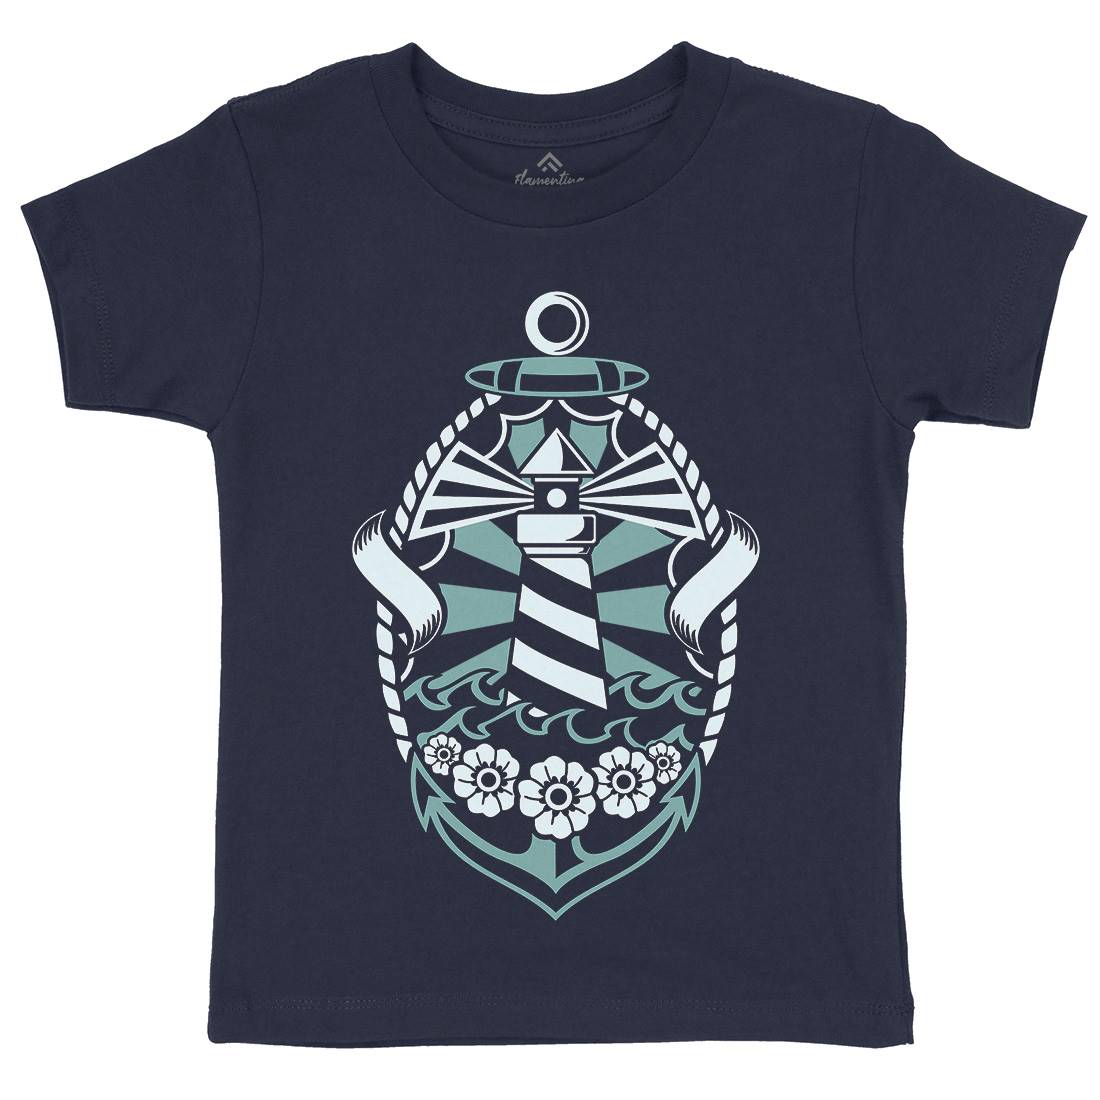 Lighthouse Kids Crew Neck T-Shirt Navy A086